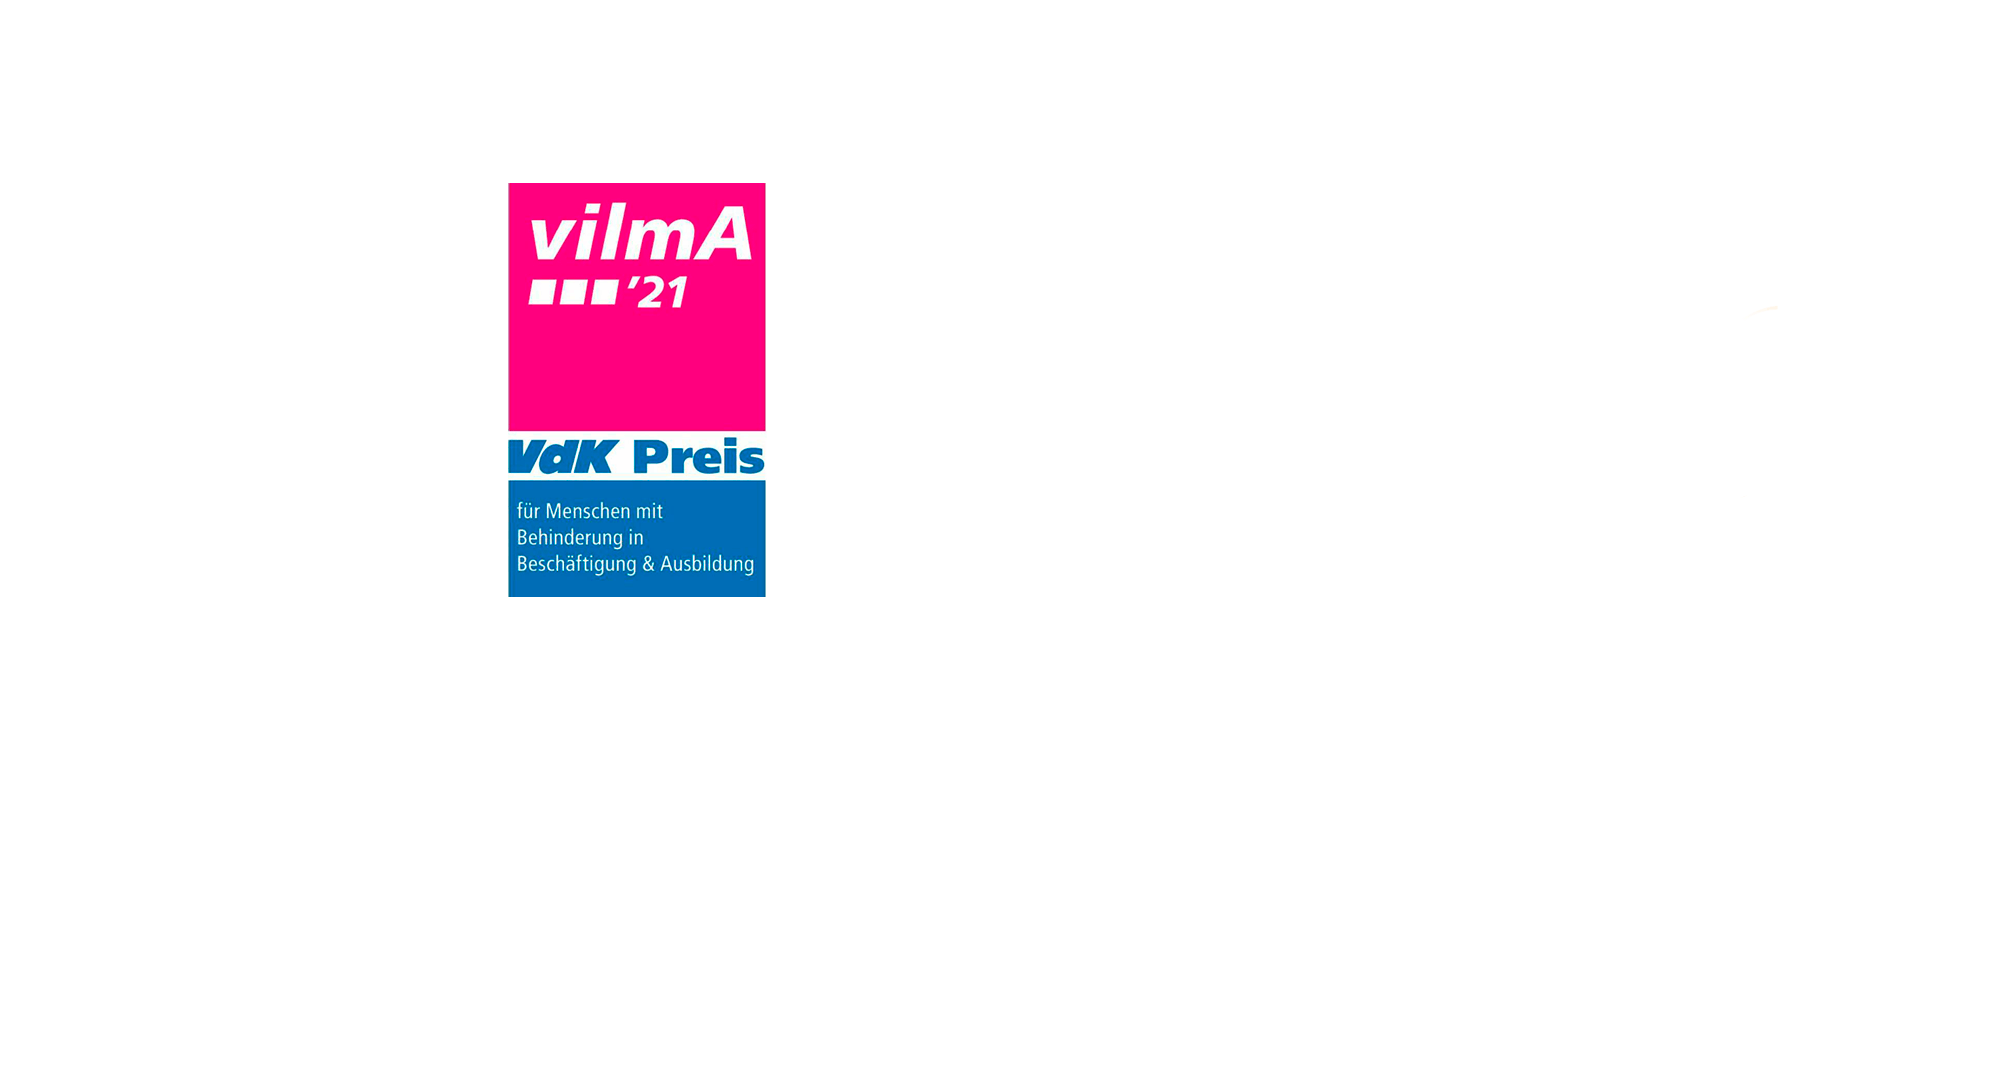 Logo des Vdk-Preises Vilma. Aufrechtstehendes Rechteck unterteilt in drei Flächen in pink, weiß und blau. Darauf steht ein Text.